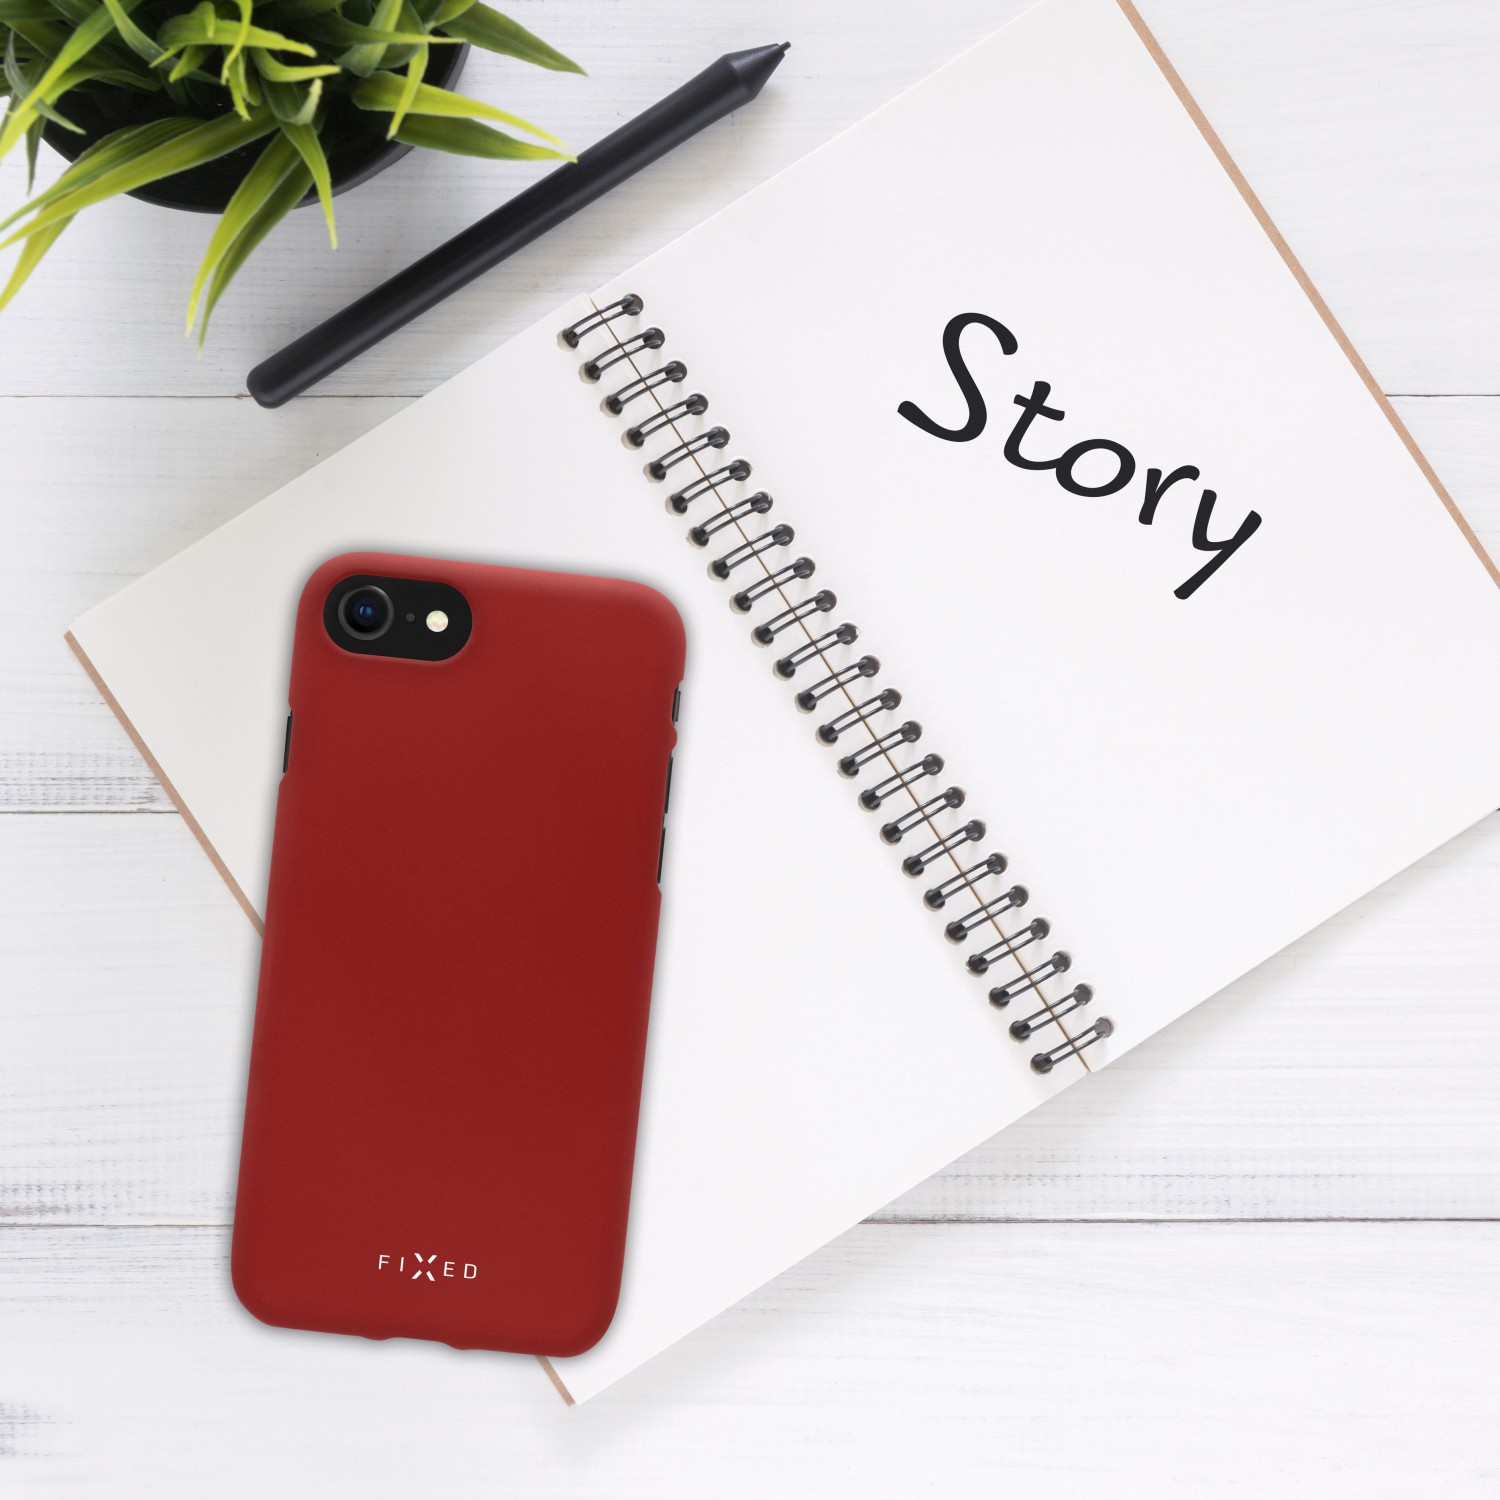 Zadní kryt FIXED Story pro Xiaomi Redmi Note 8 Pro, červený